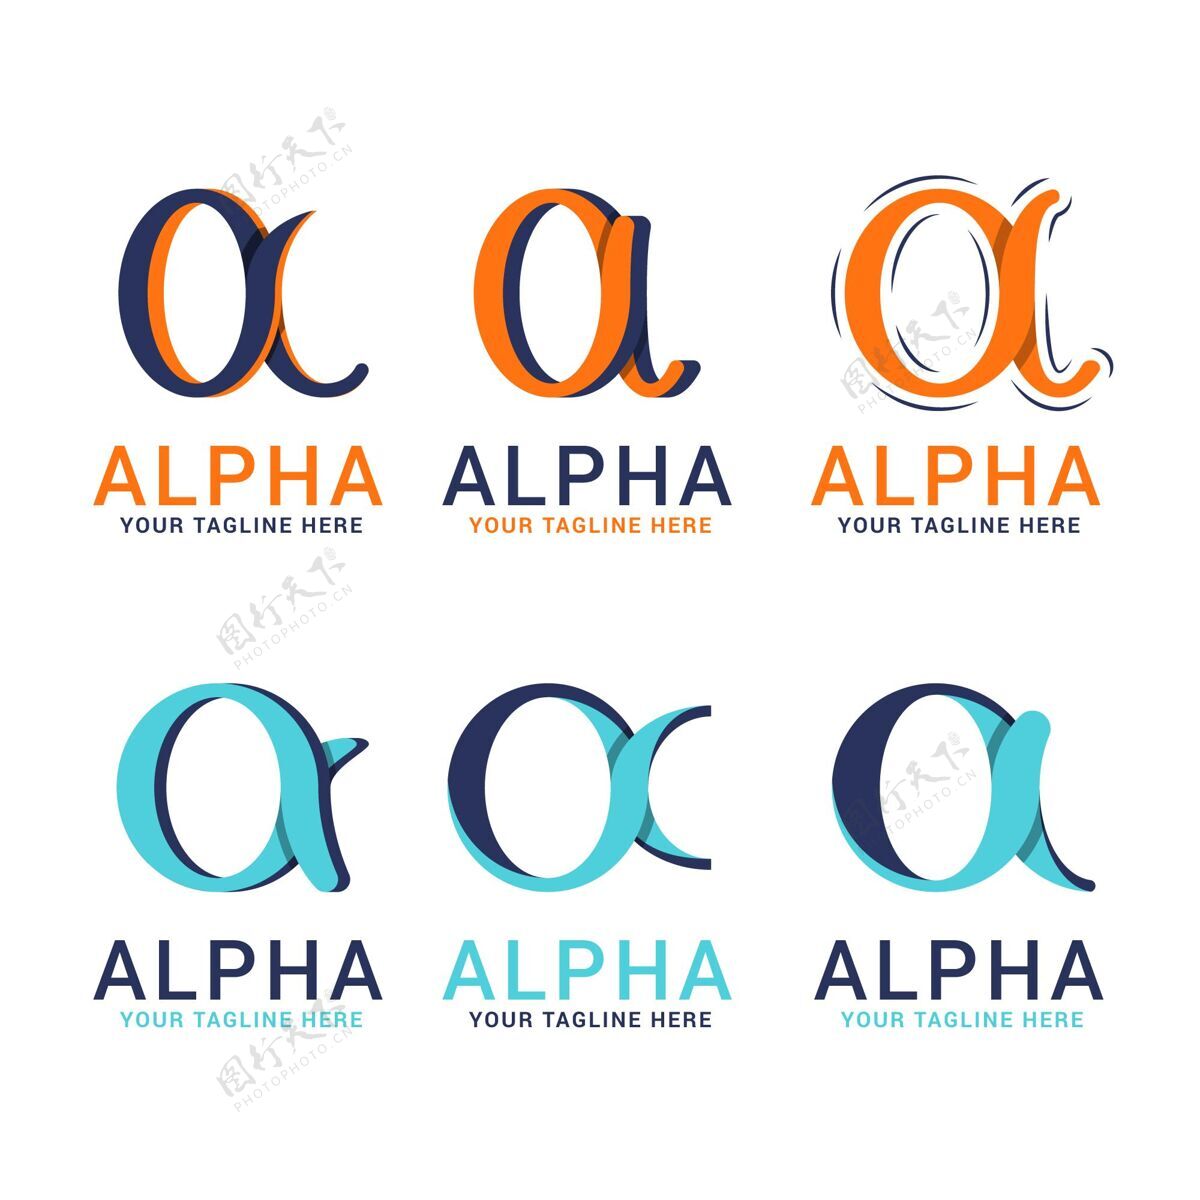 品牌平面设计阿尔法标志包标识品牌企业